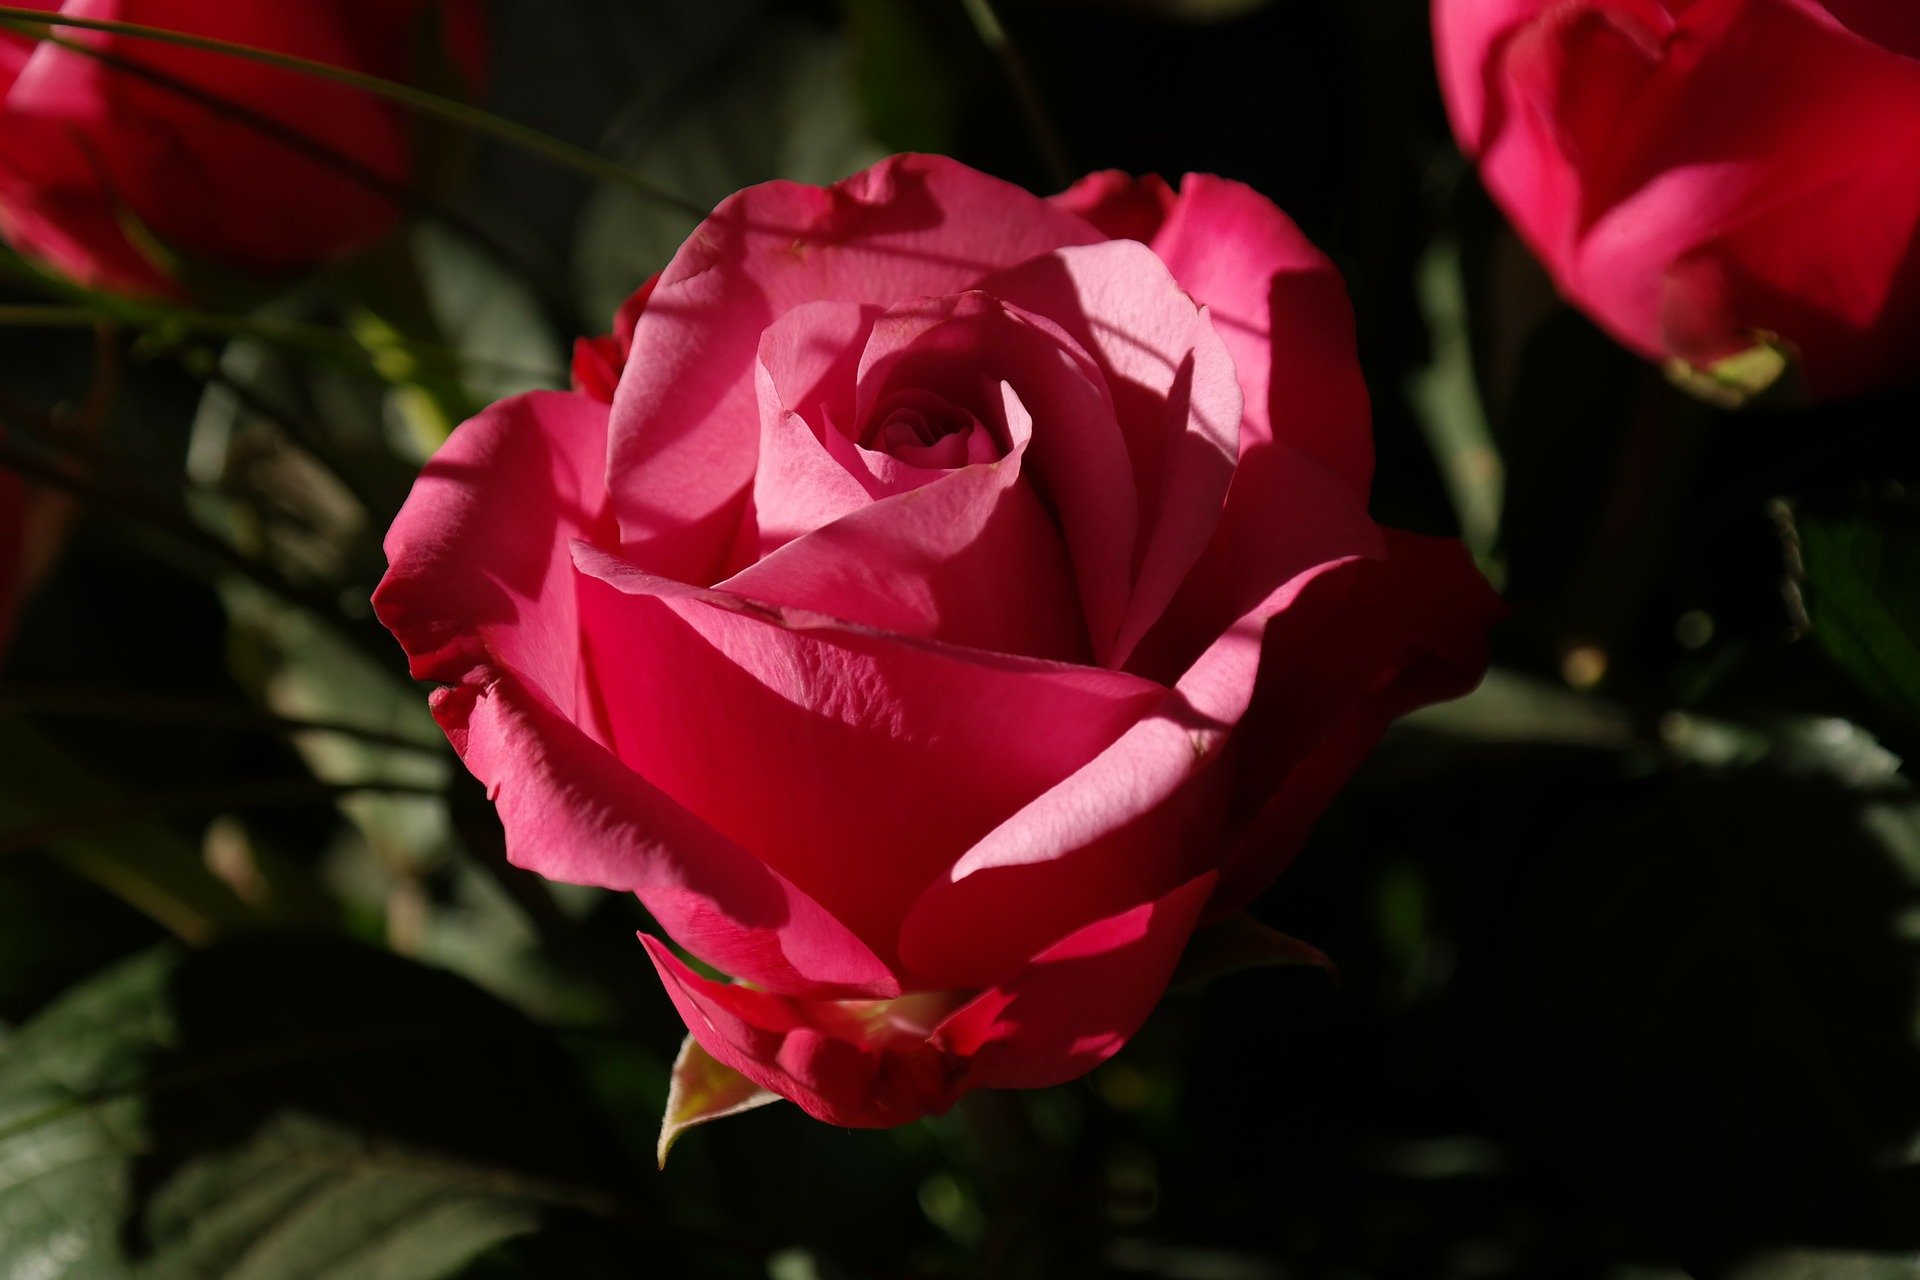 Como plantar rosas: veja dicas e cuidados básicos